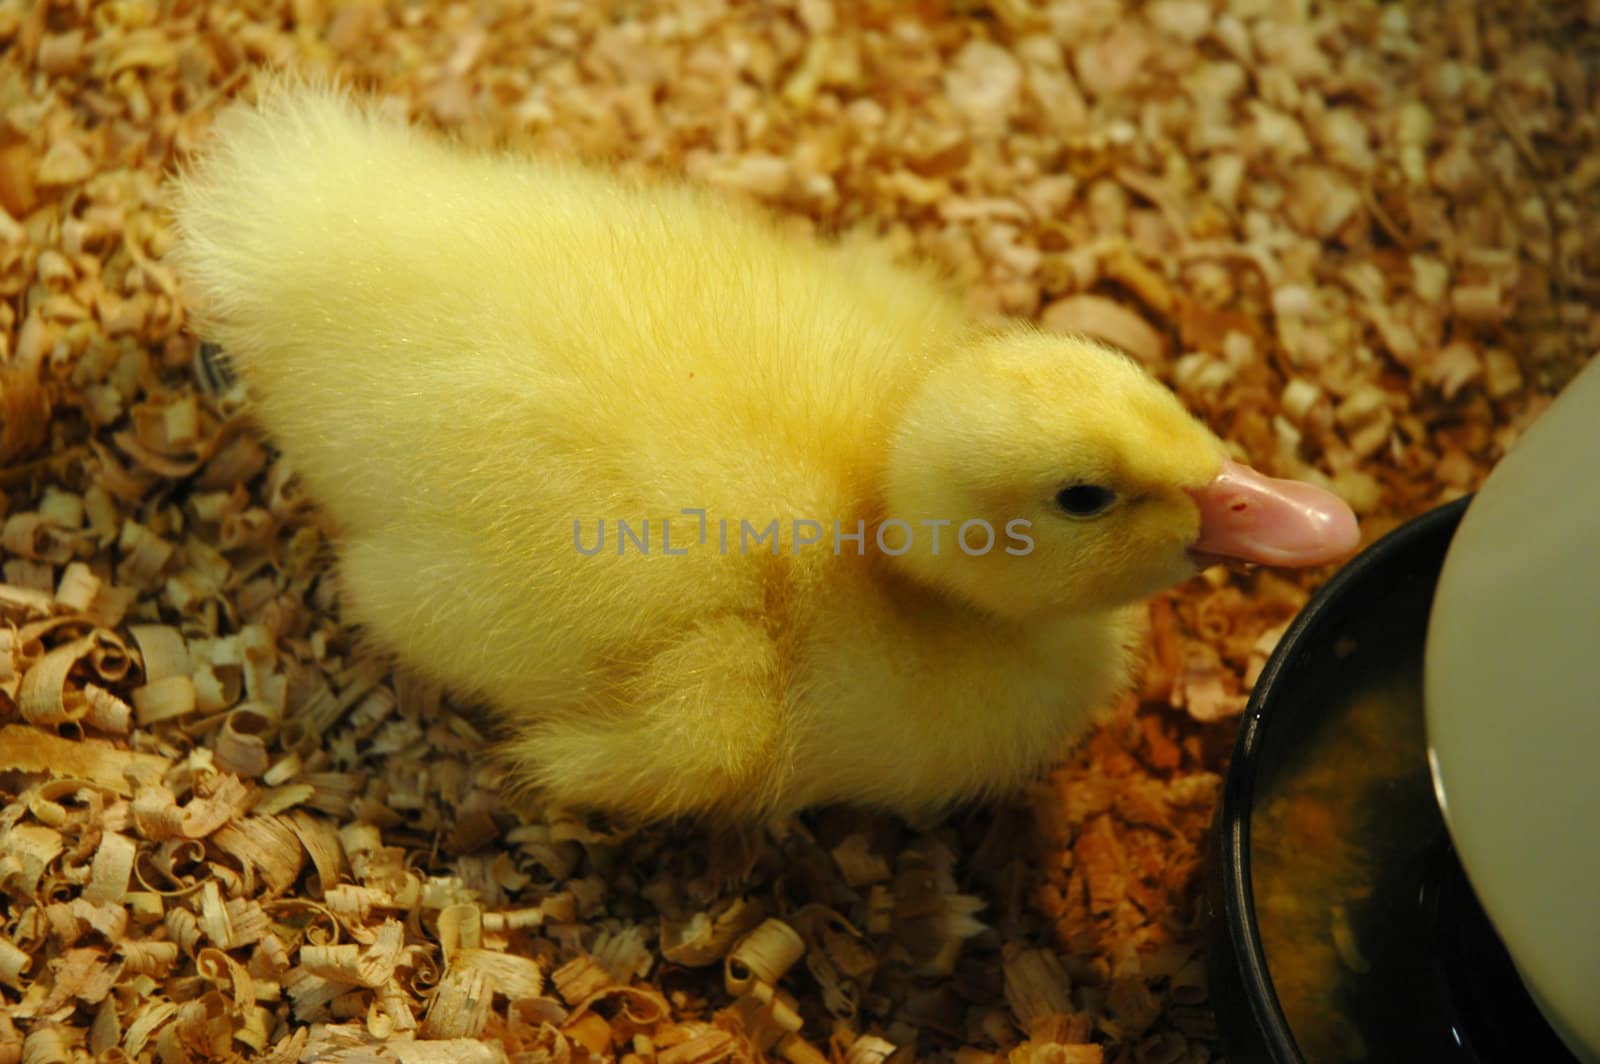 Yellow newborn duckling pet feeding in a farm